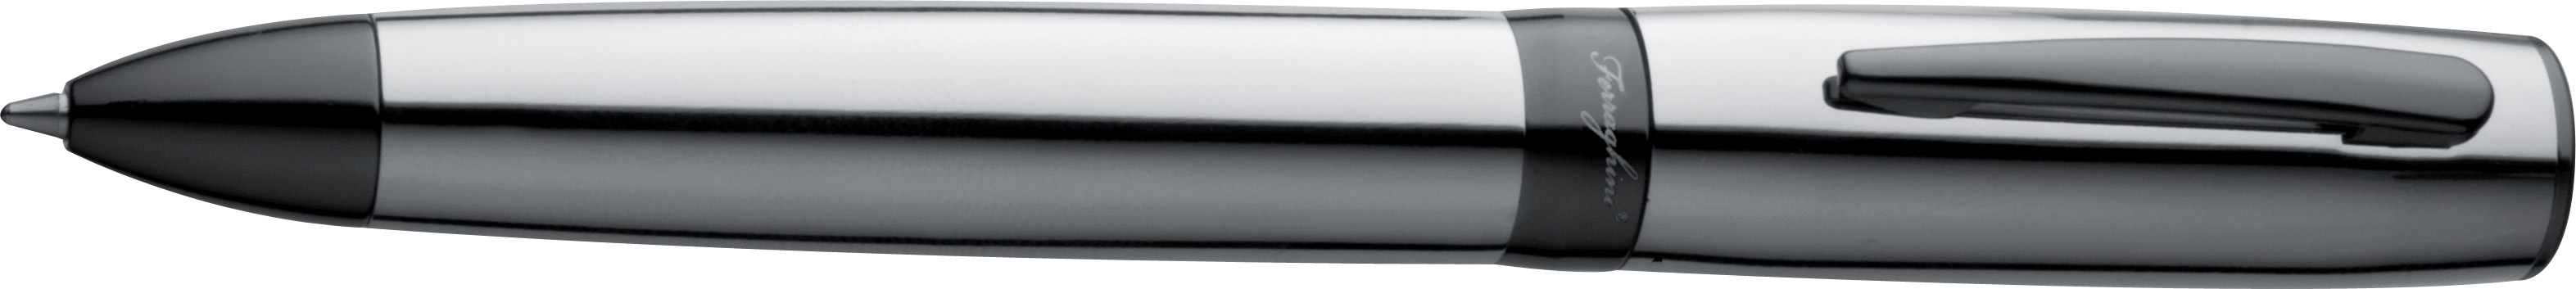 Chromed ball point pen in black PU case